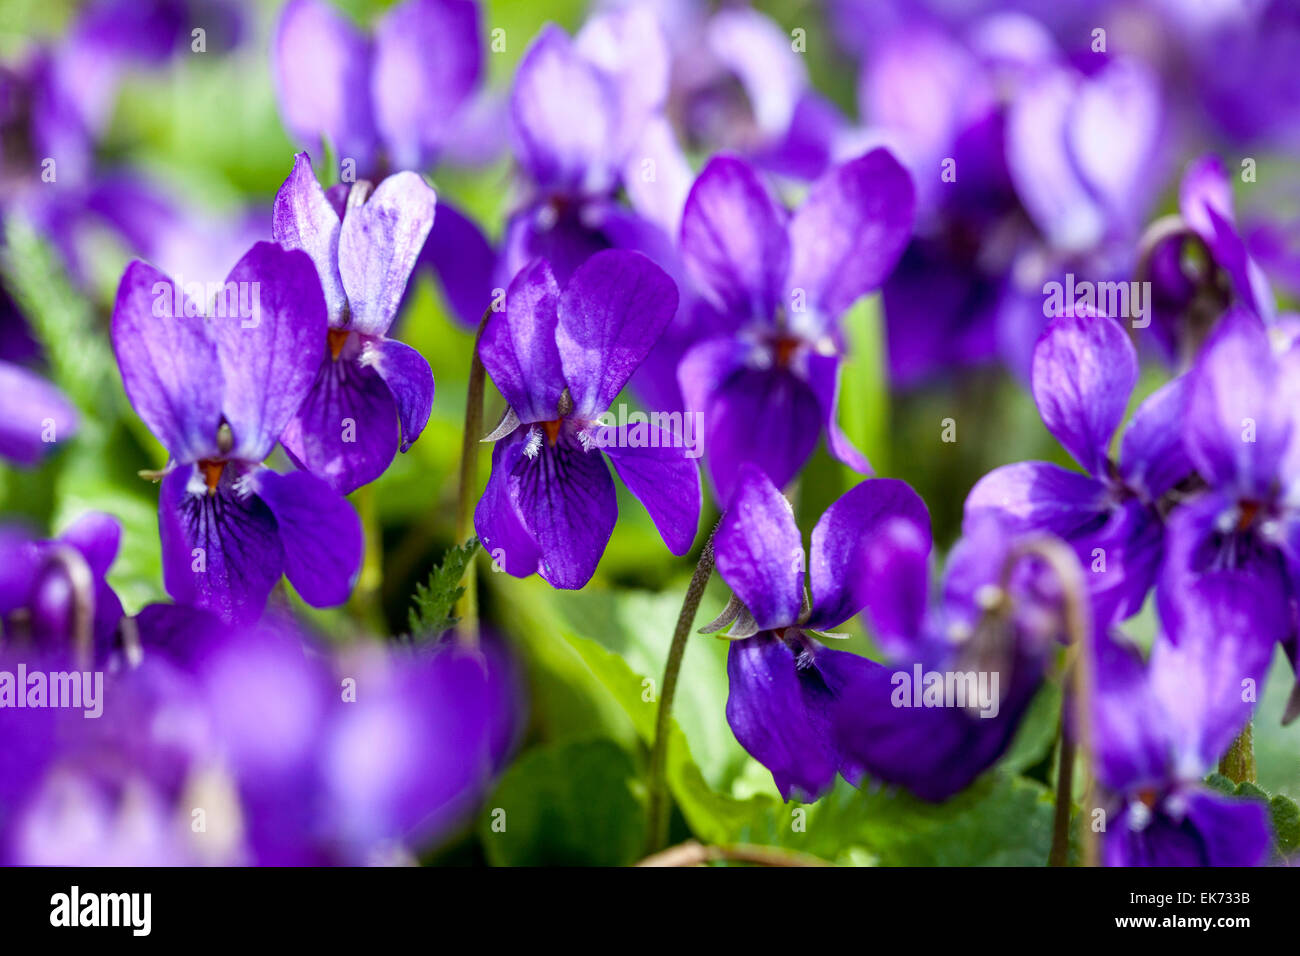 Viola odorata, Violet, Sweet violet, aromatic plant in bloom Stock Photo